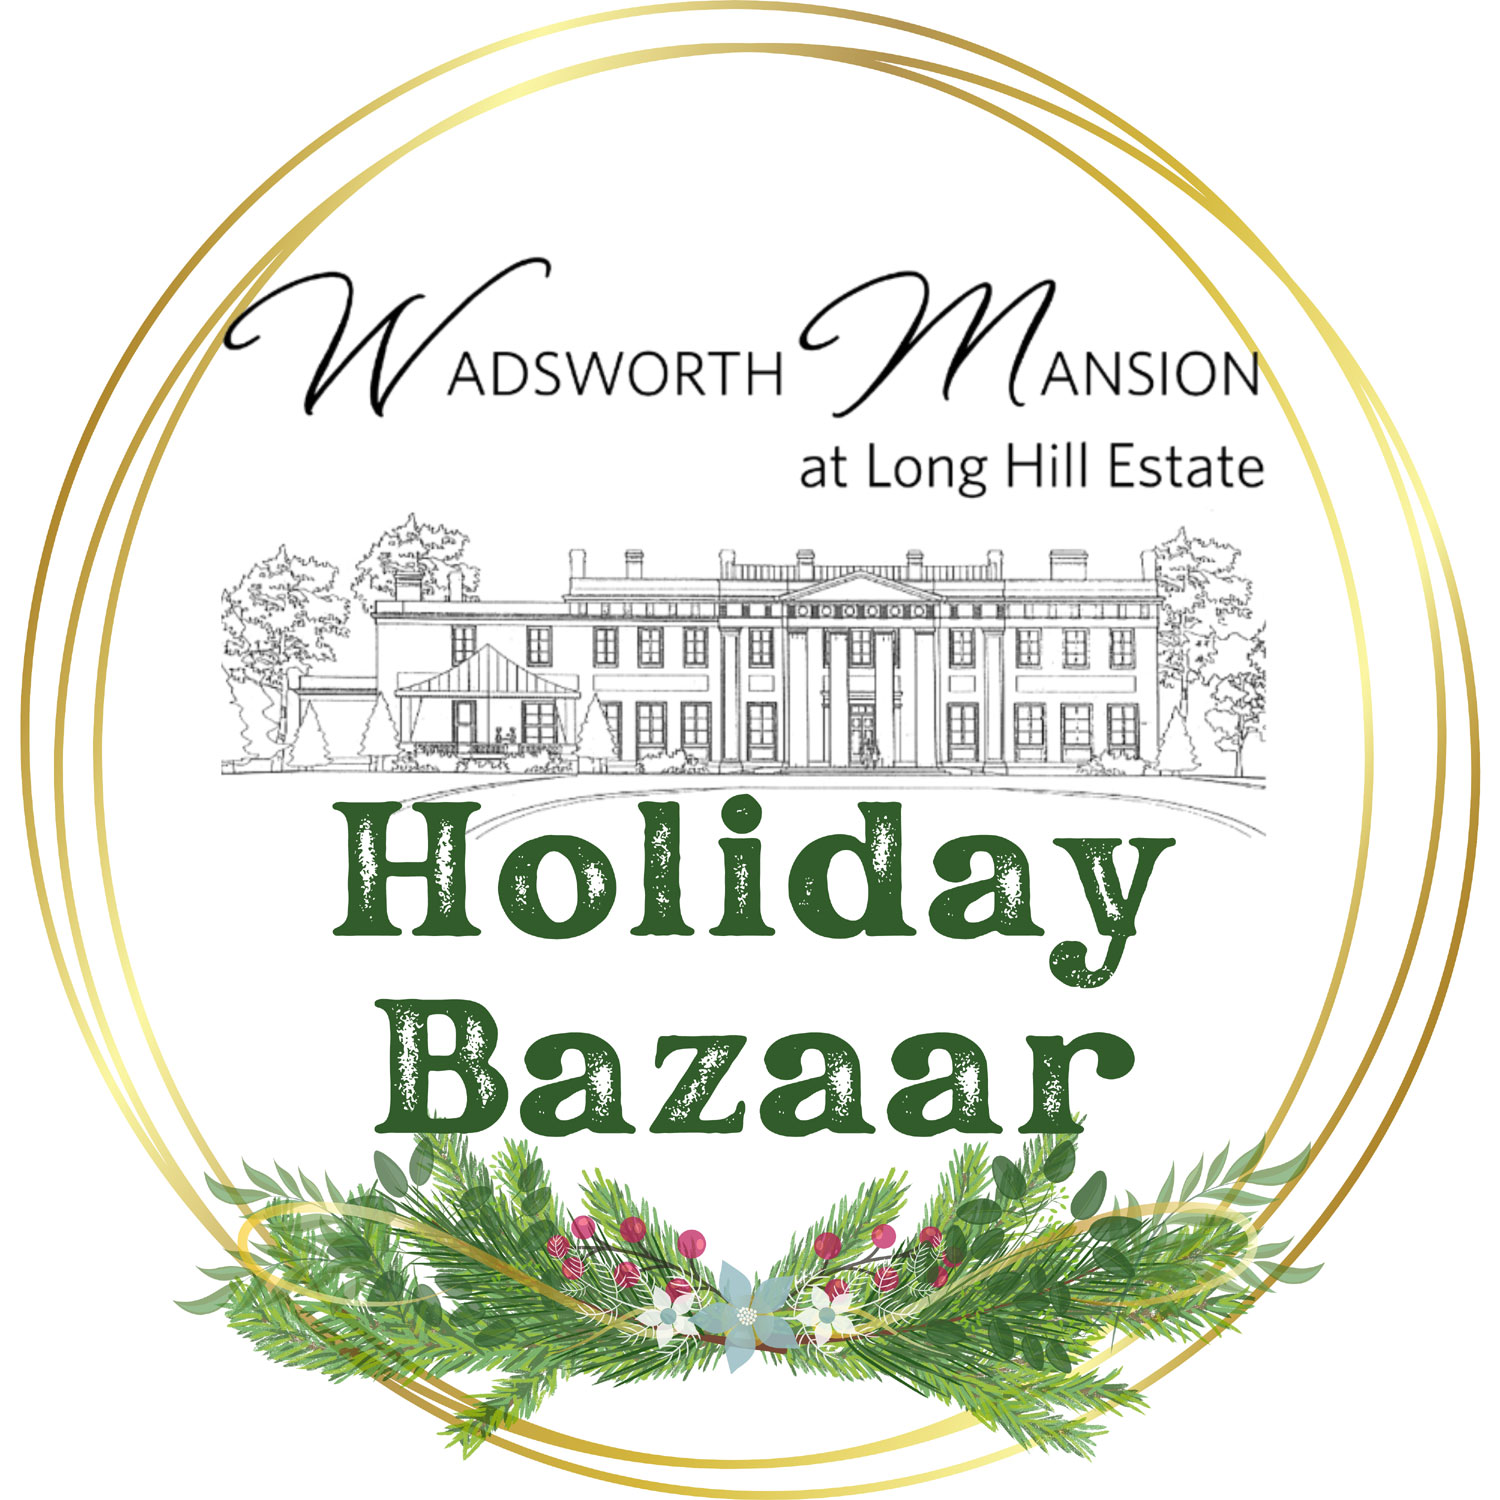 Holiday Bazaar at Wadsworth Mansion at Long Hill Estate